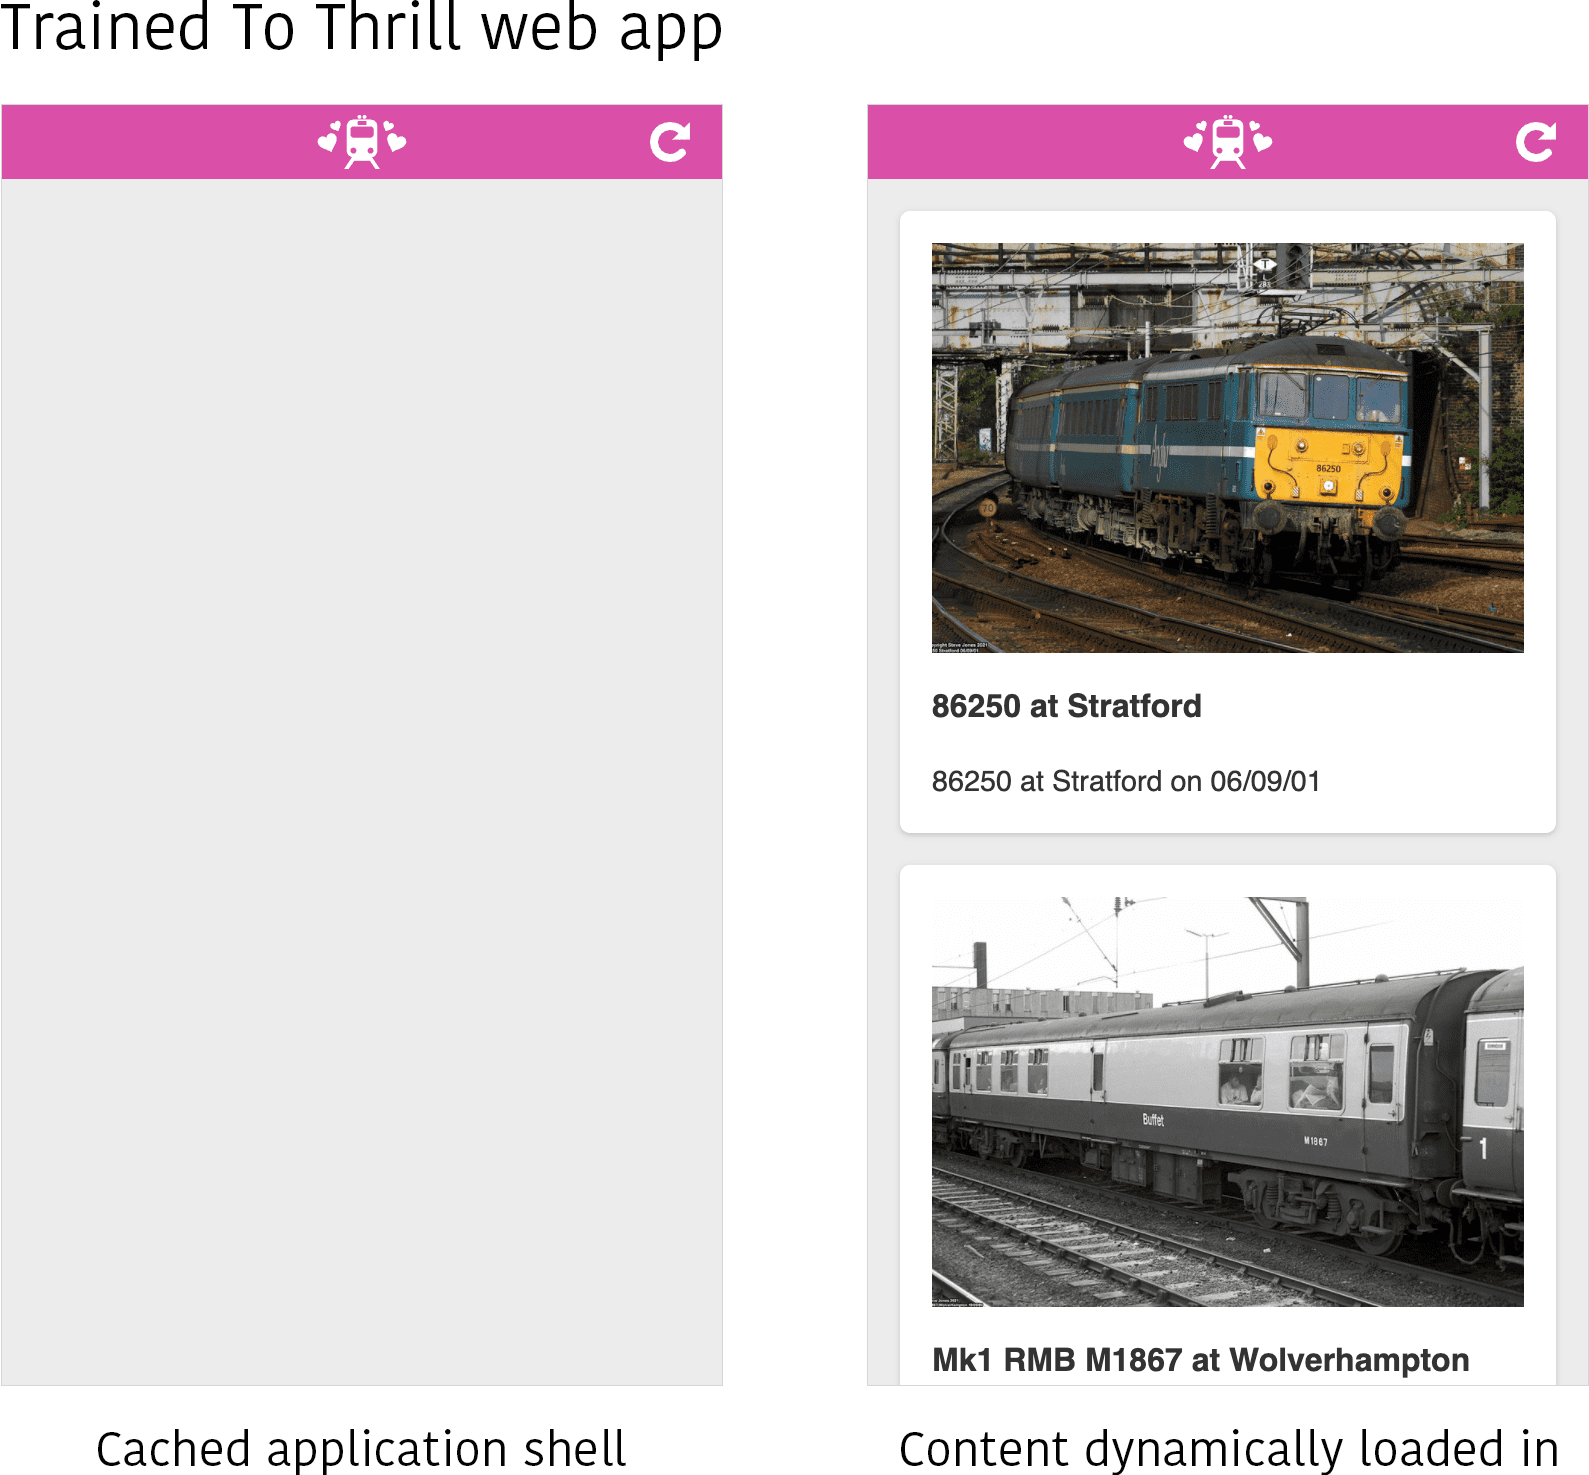 Снимок экрана веб-приложения Trained to Thrill в двух разных состояниях. Слева видна только оболочка кэшированного приложения без заполнения содержимого. Справа контент (несколько изображений некоторых поездов) динамически загружается в область содержимого оболочки приложения.